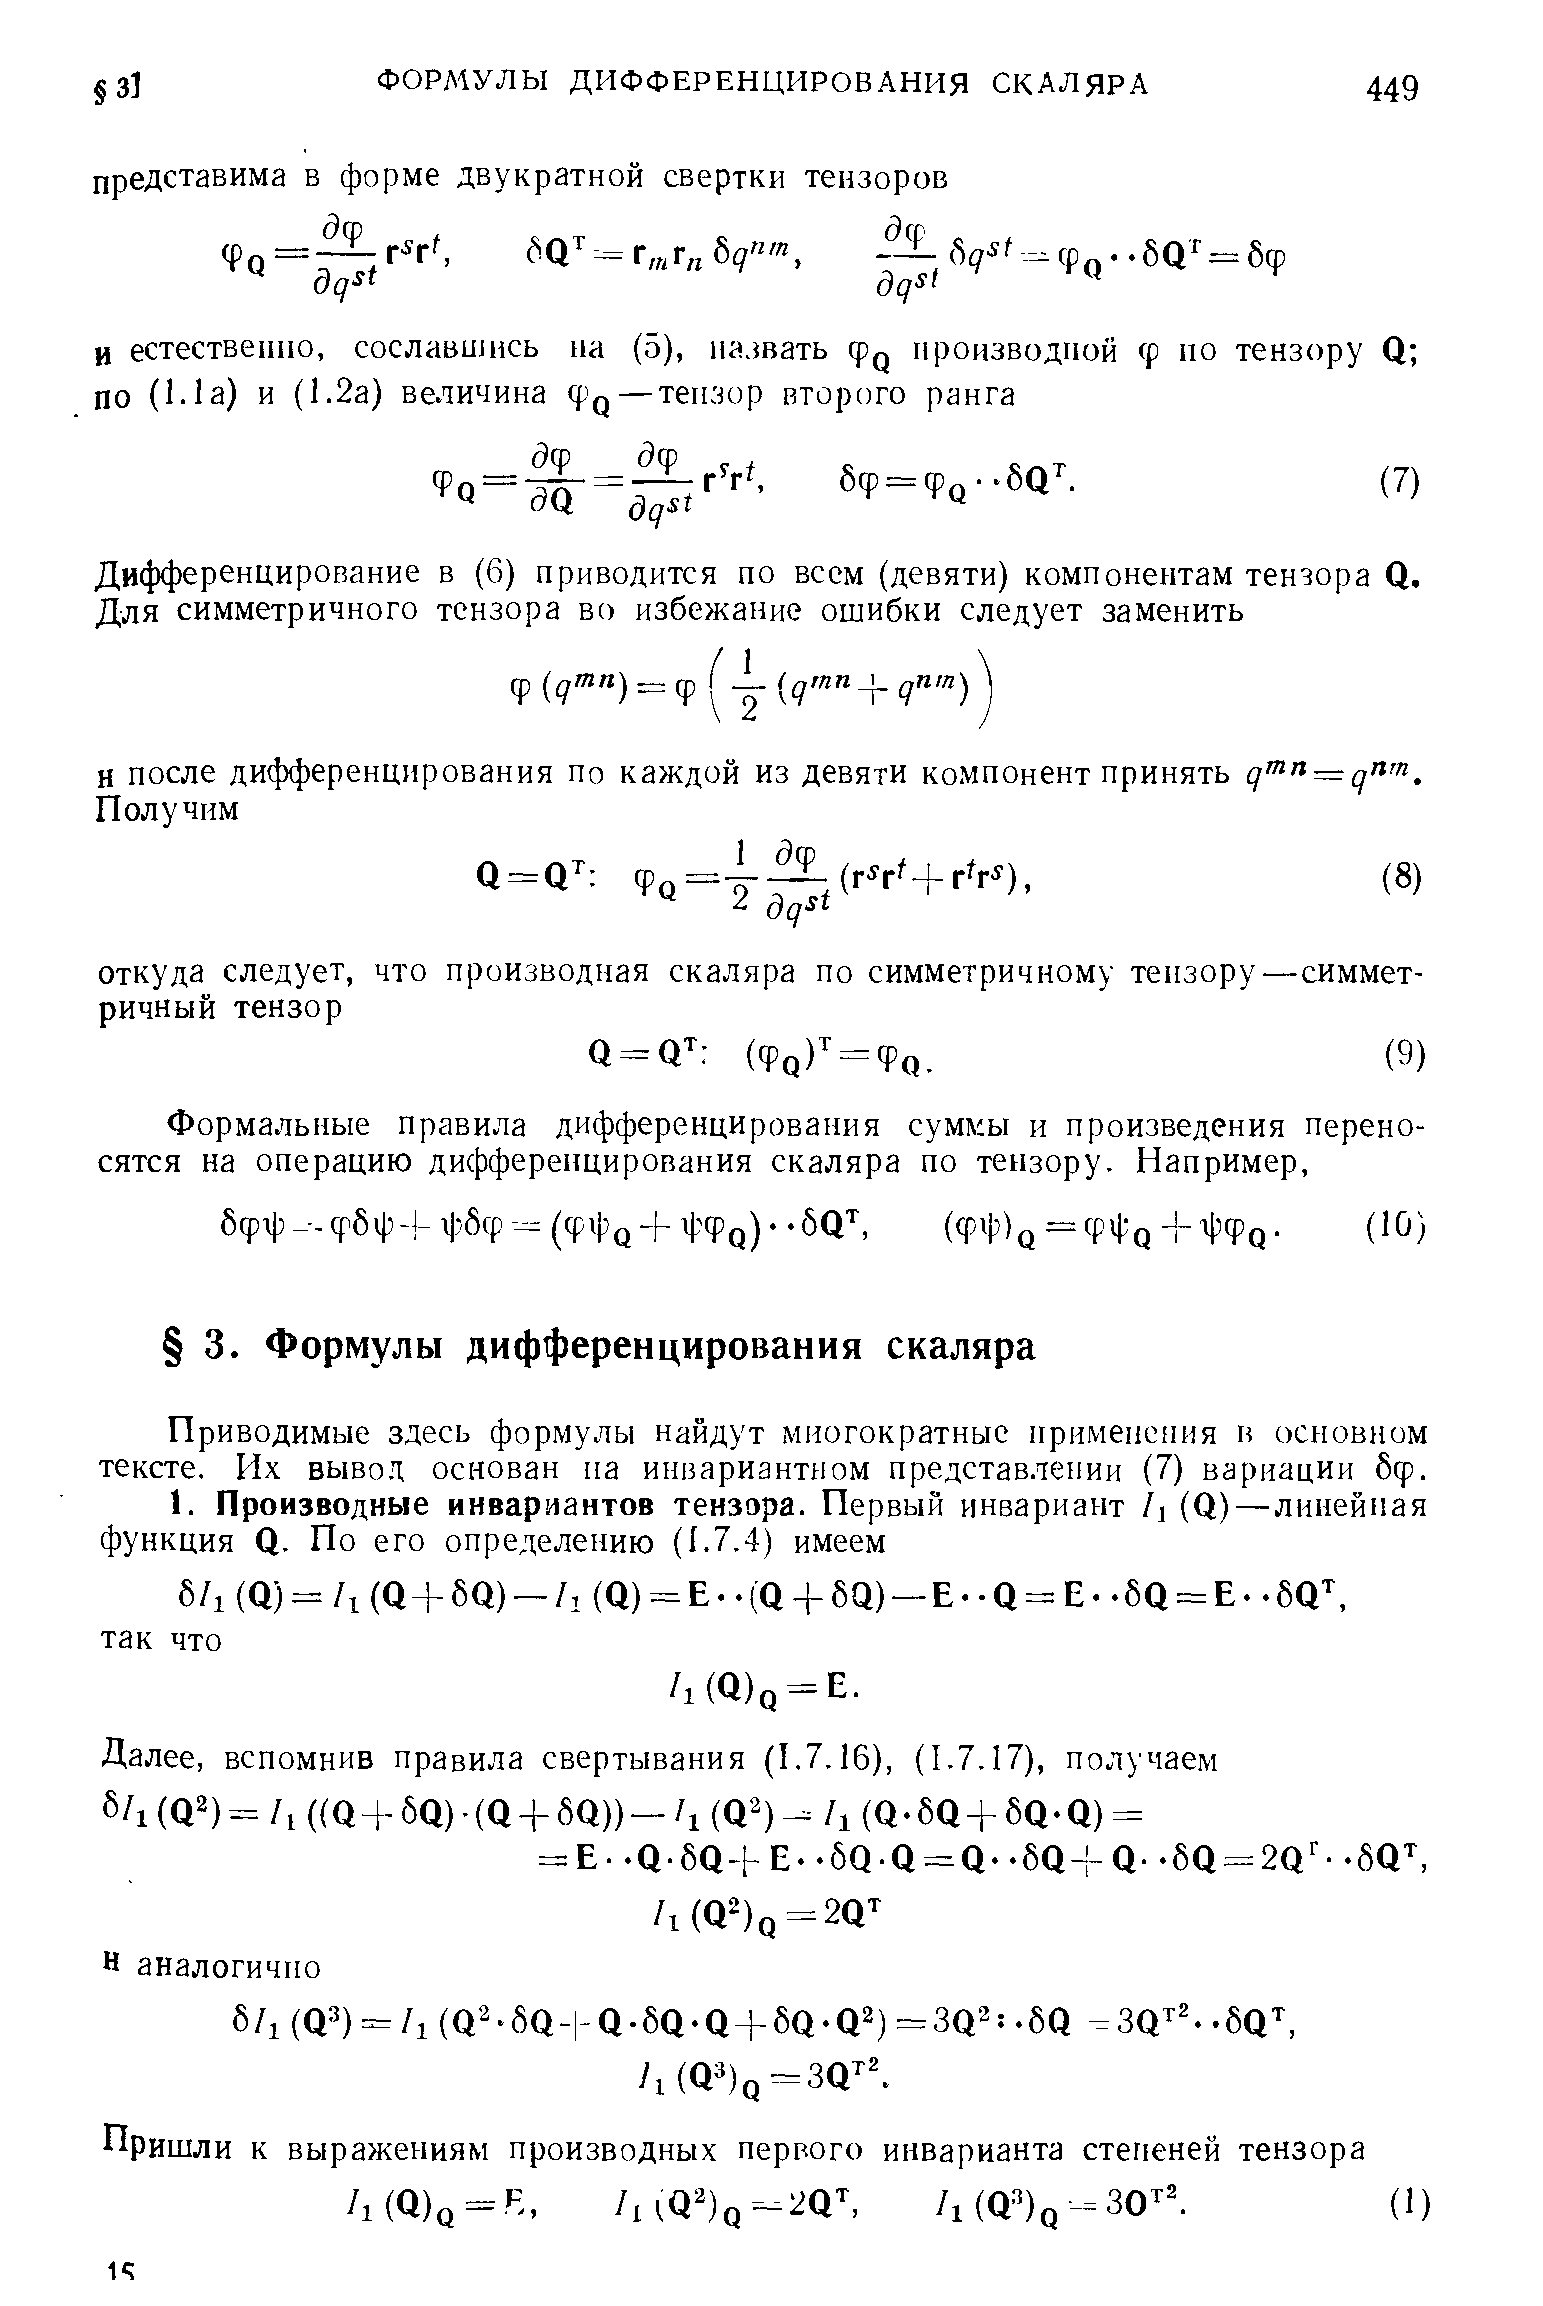 Приводимые здесь формулы найдут многократные нрименення н основном тексте. Их вывод основан на инвариантном представлении (7) вариации бф.
